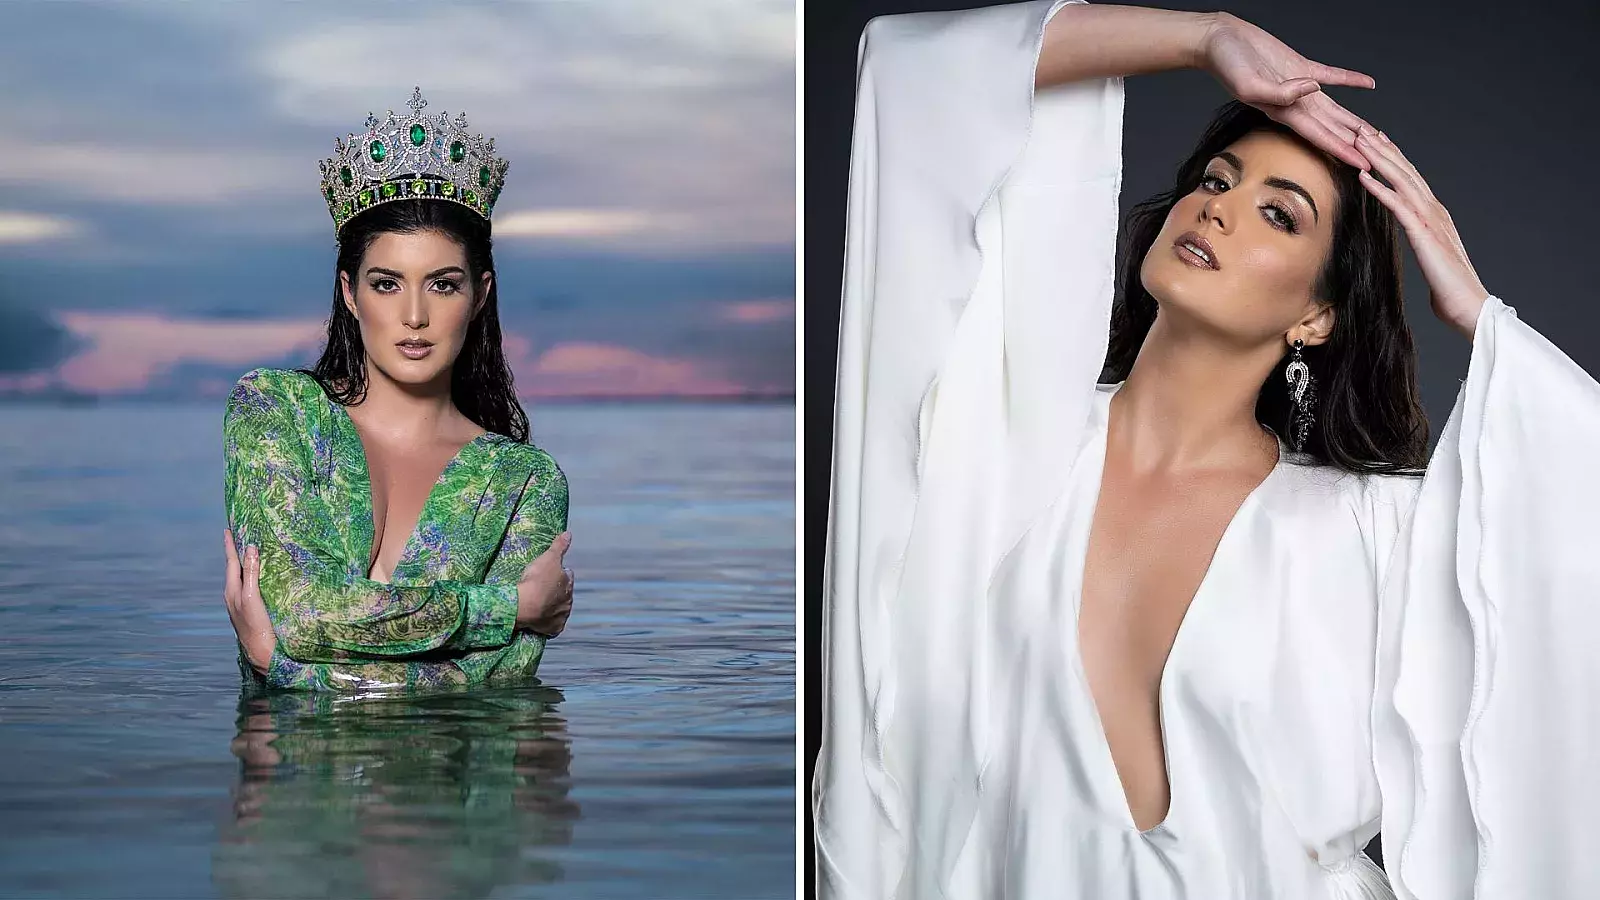 Una cubana va al concurso Miss Earth